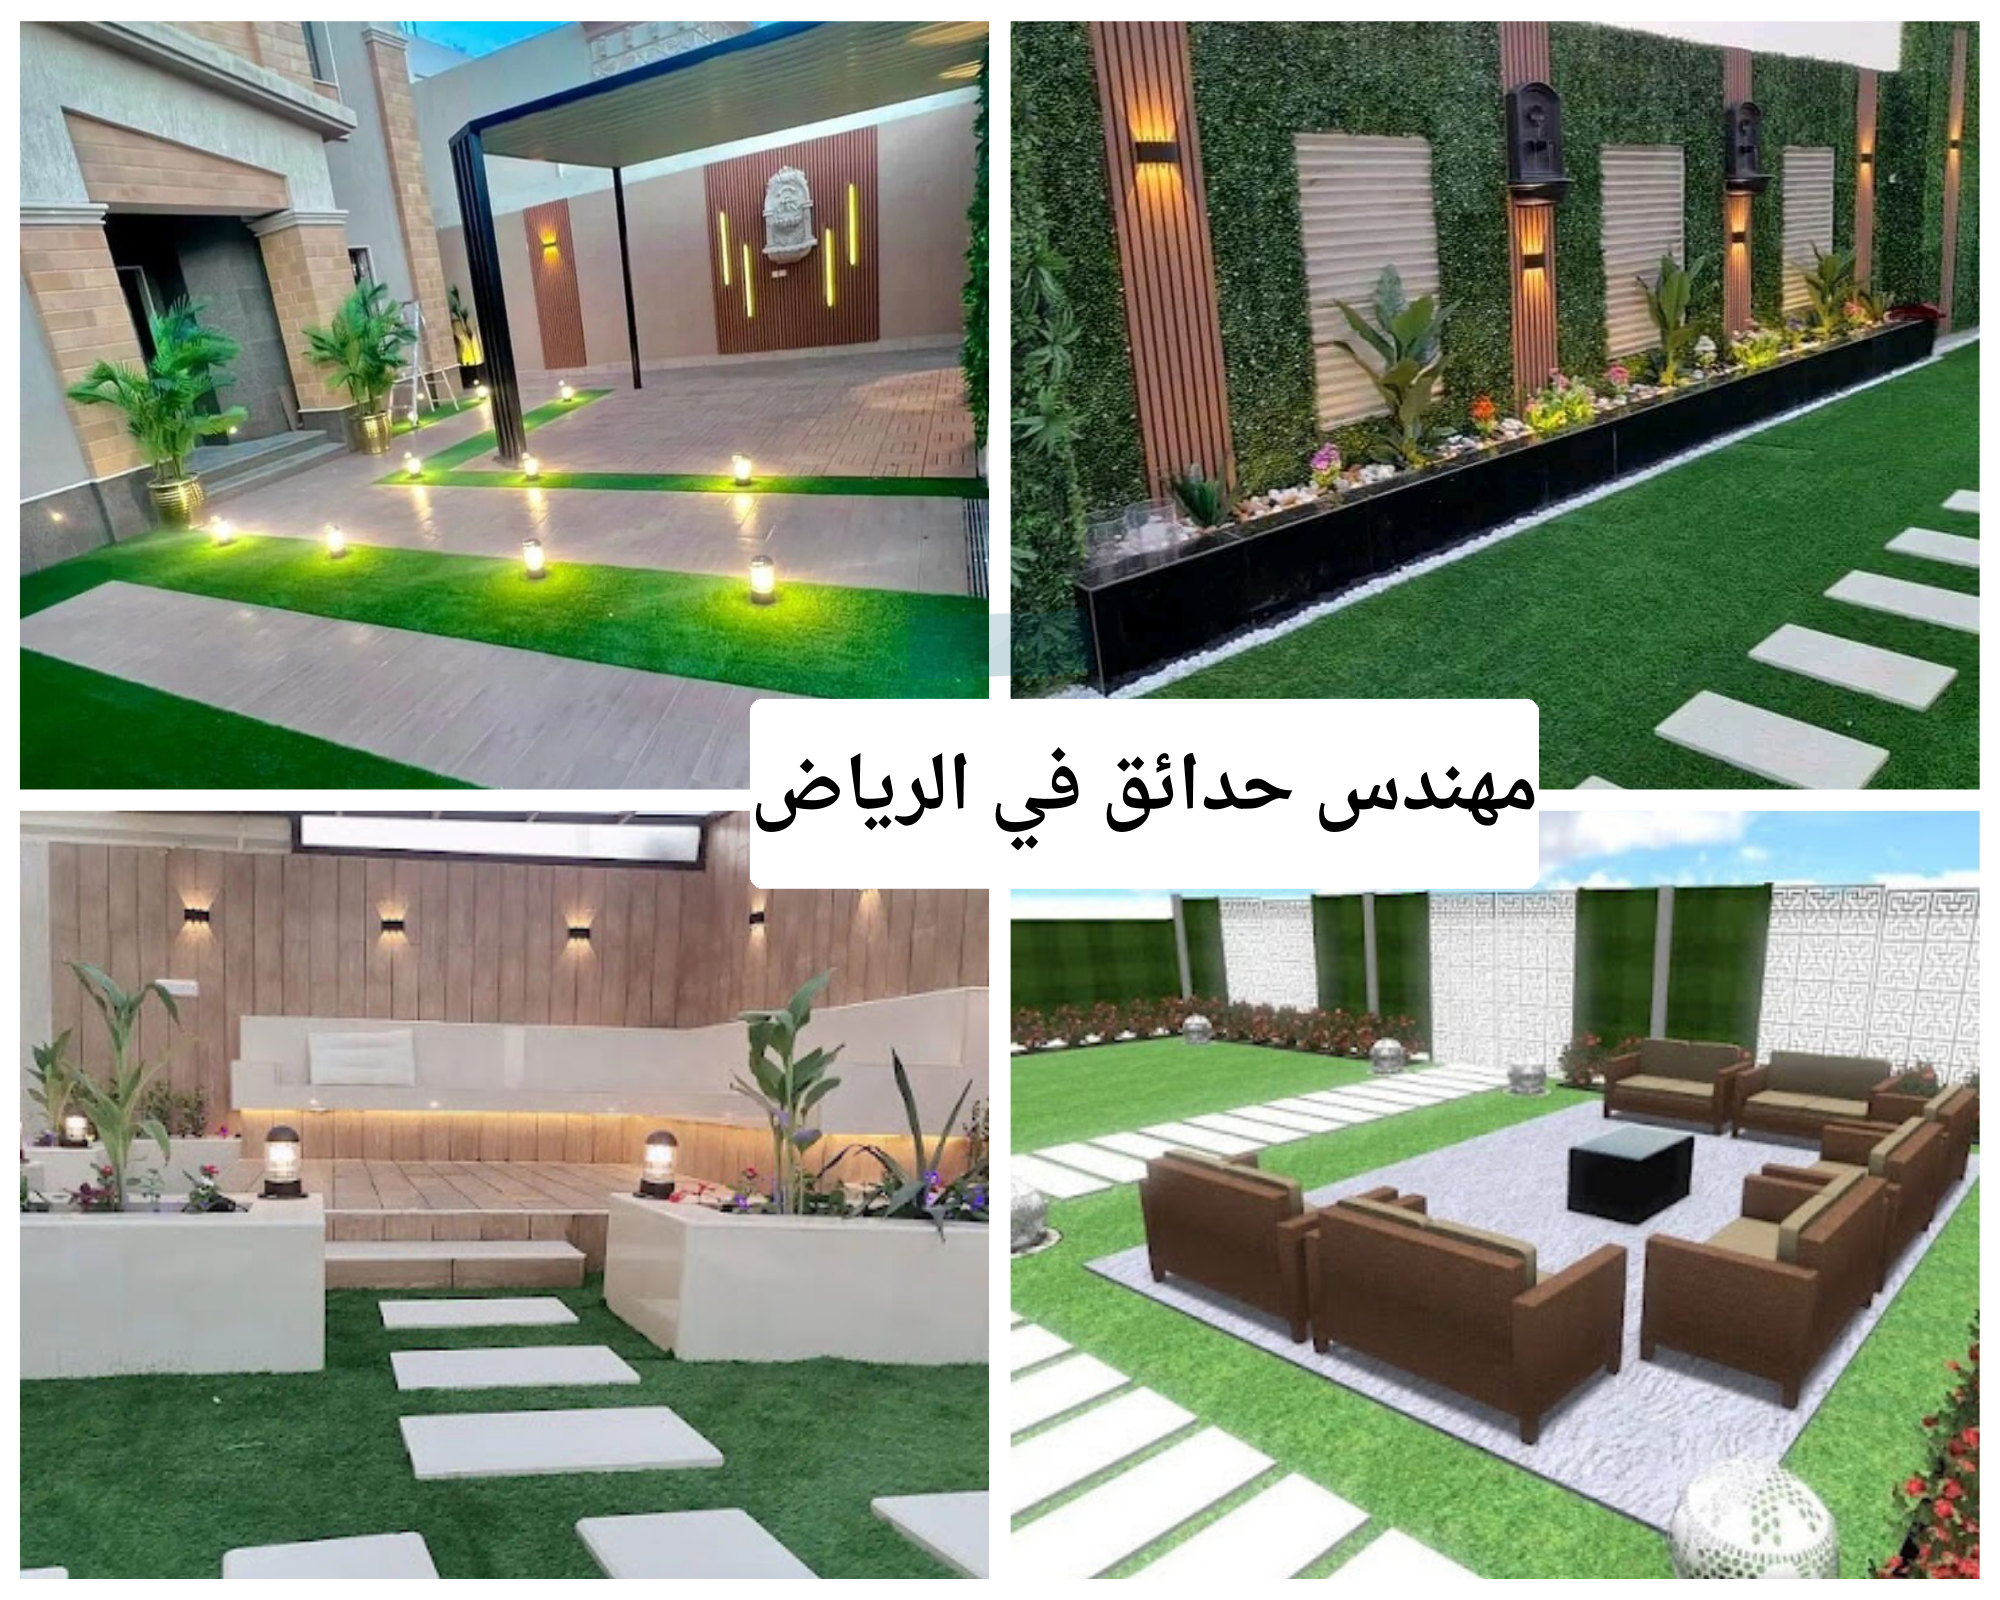 مهندس حدائق في الرياض أحدث التصميمات والخامات لتنسيق الحدائق